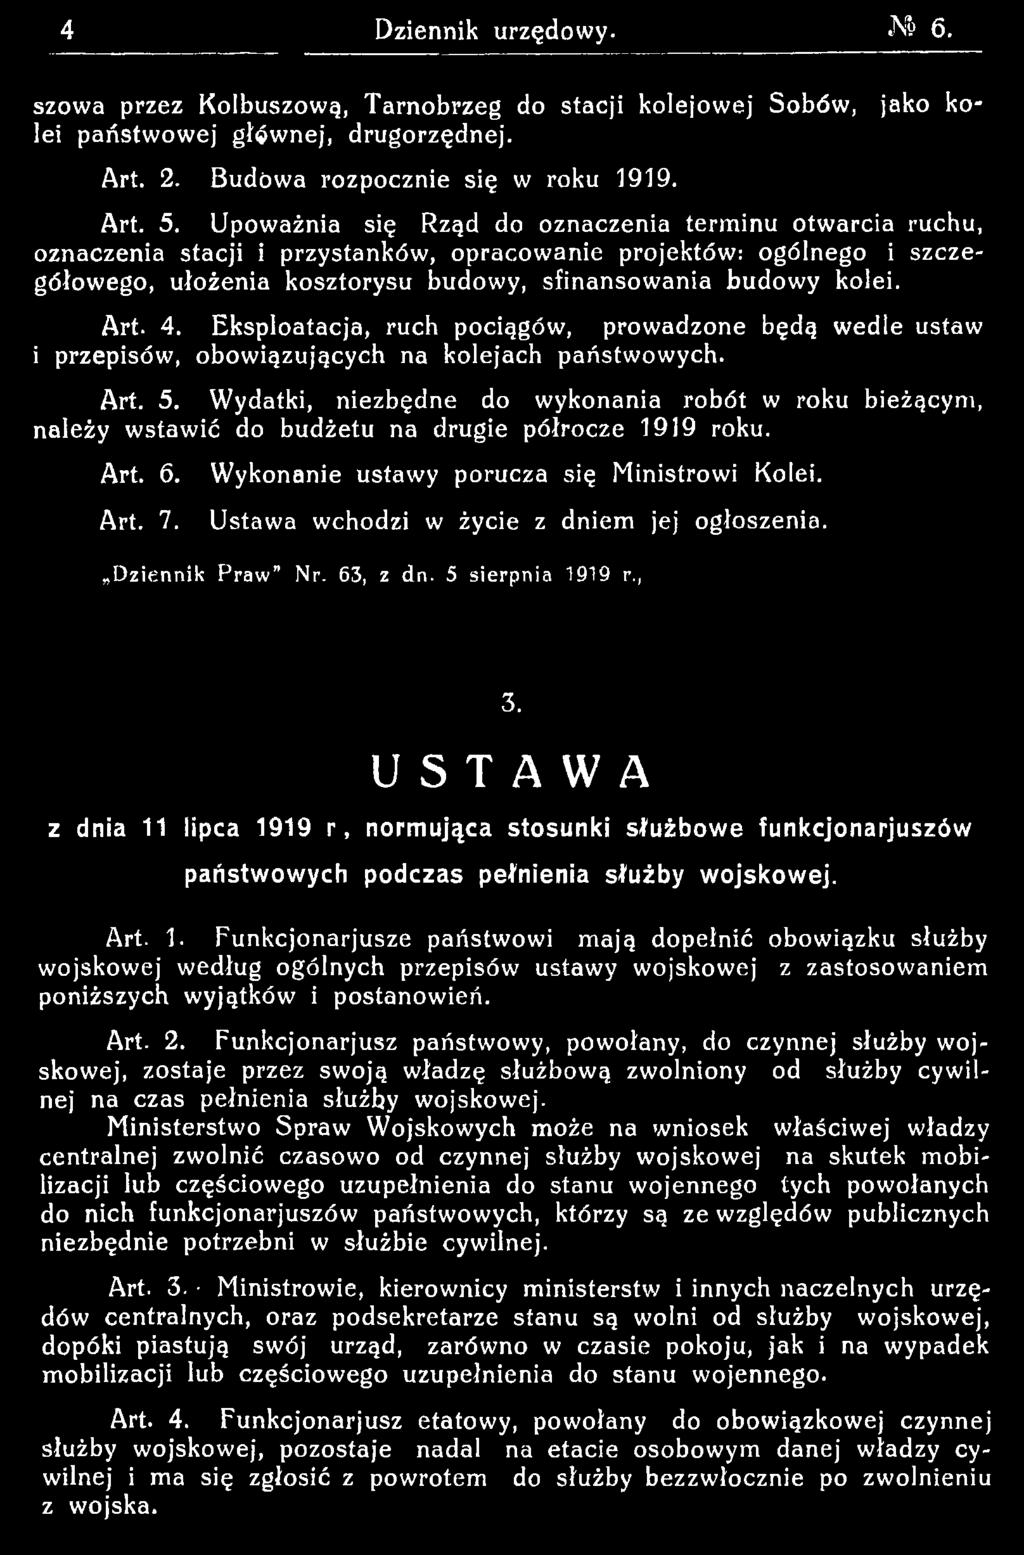 Ustawa wchodzi w życie z dniem jej ogłoszenia. Dziennik P ra w Nr. 63, z dn. 5 sierpnia 1919 r., 3.